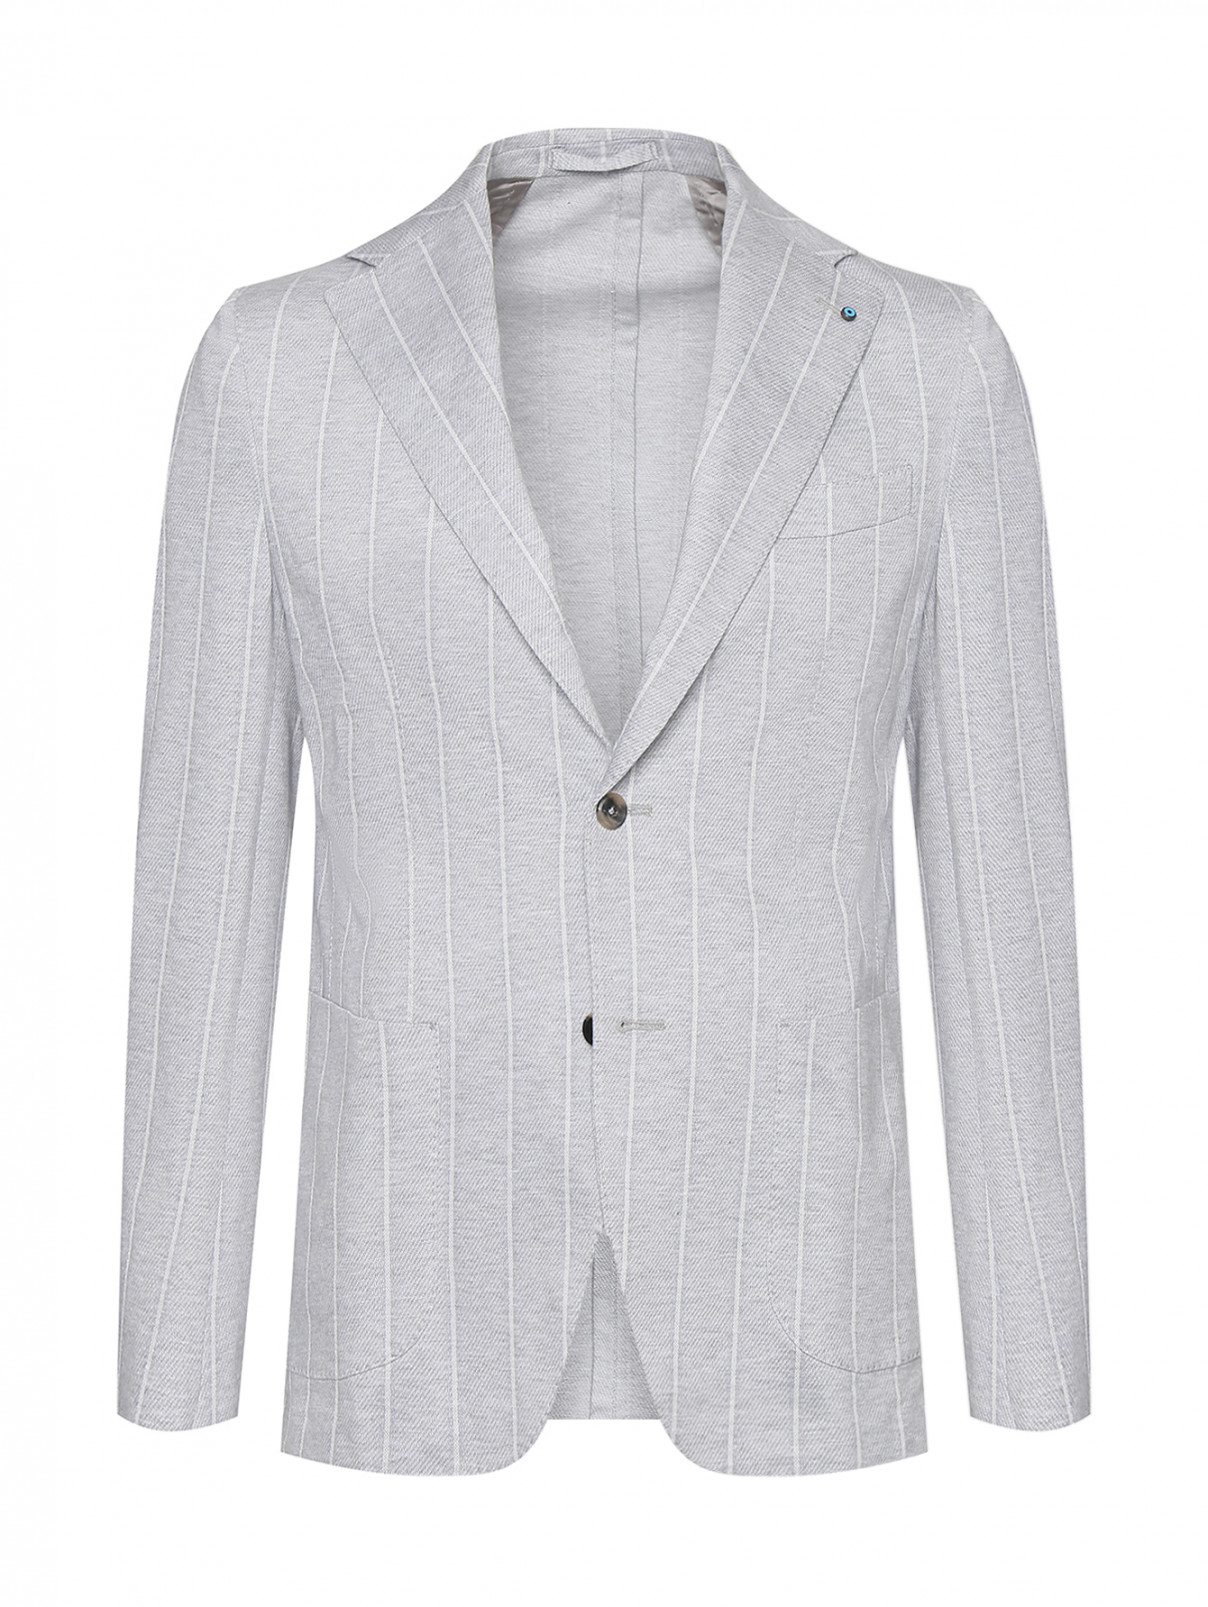 Пиджак из хлопка в полоску Giampaolo  –  Общий вид  – Цвет:  Серый